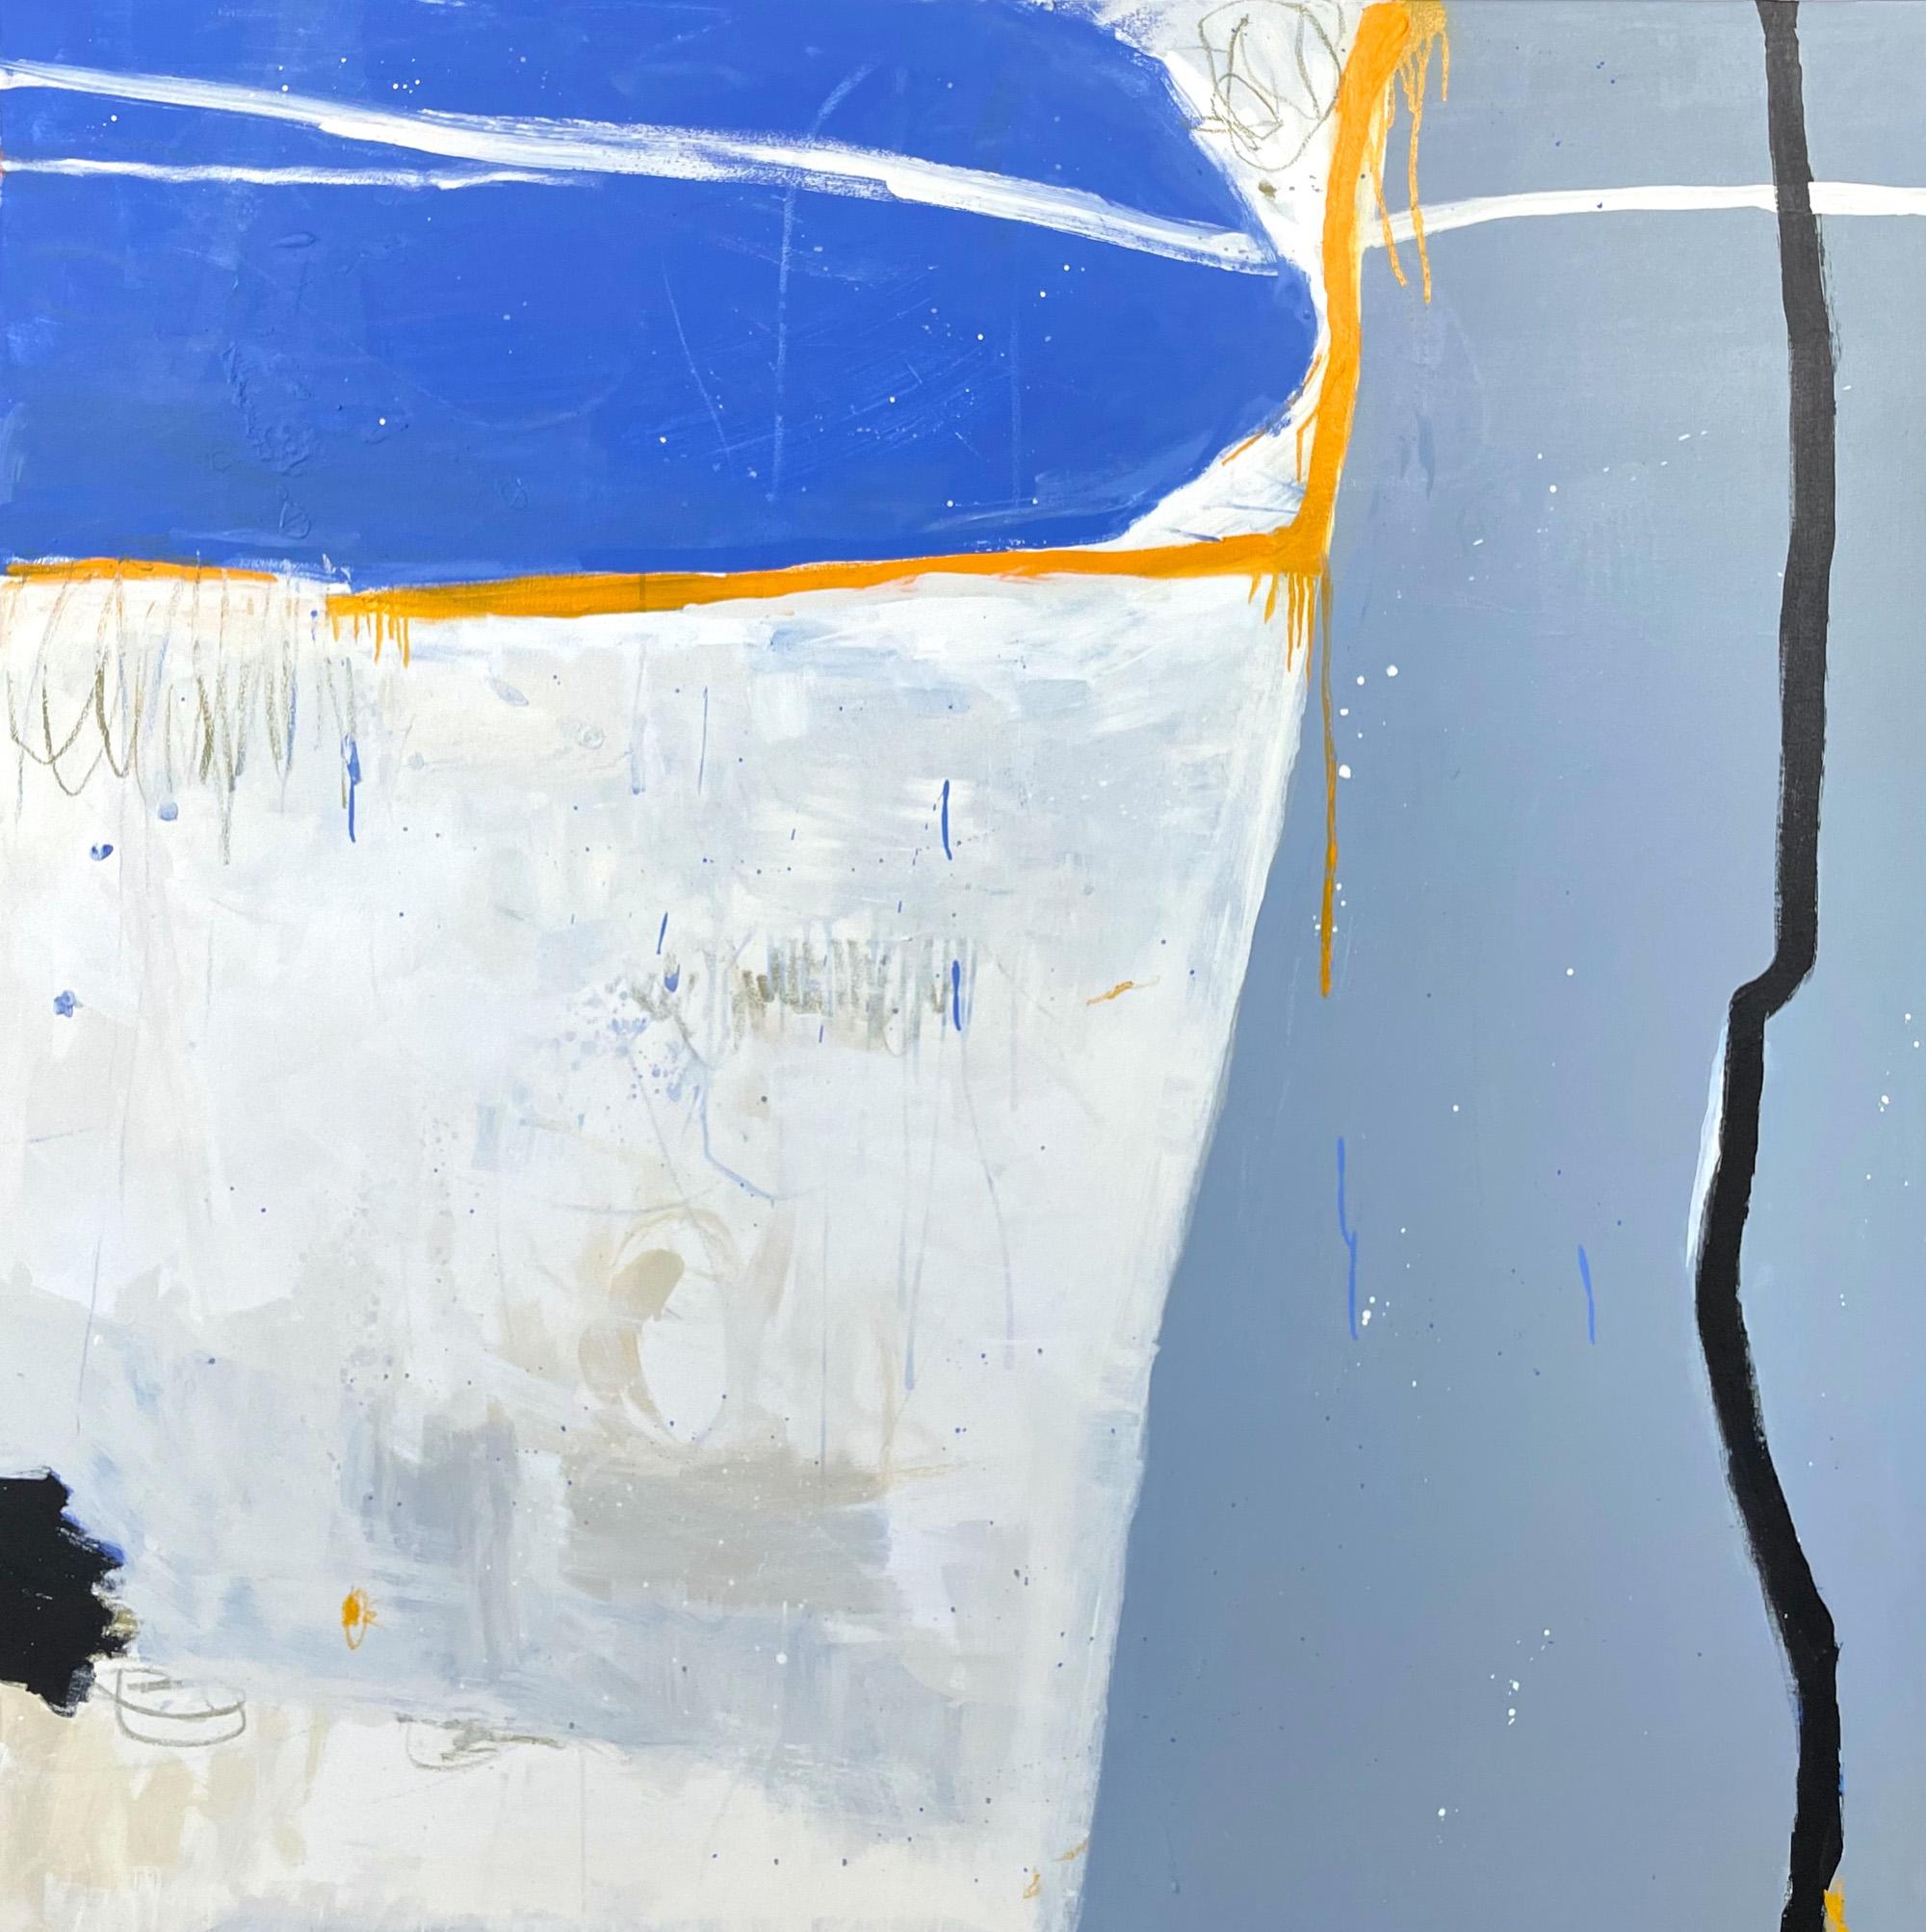 « Blue Moment I » - Peinture abstraite expressive et ludique dans des bleus harmonieux